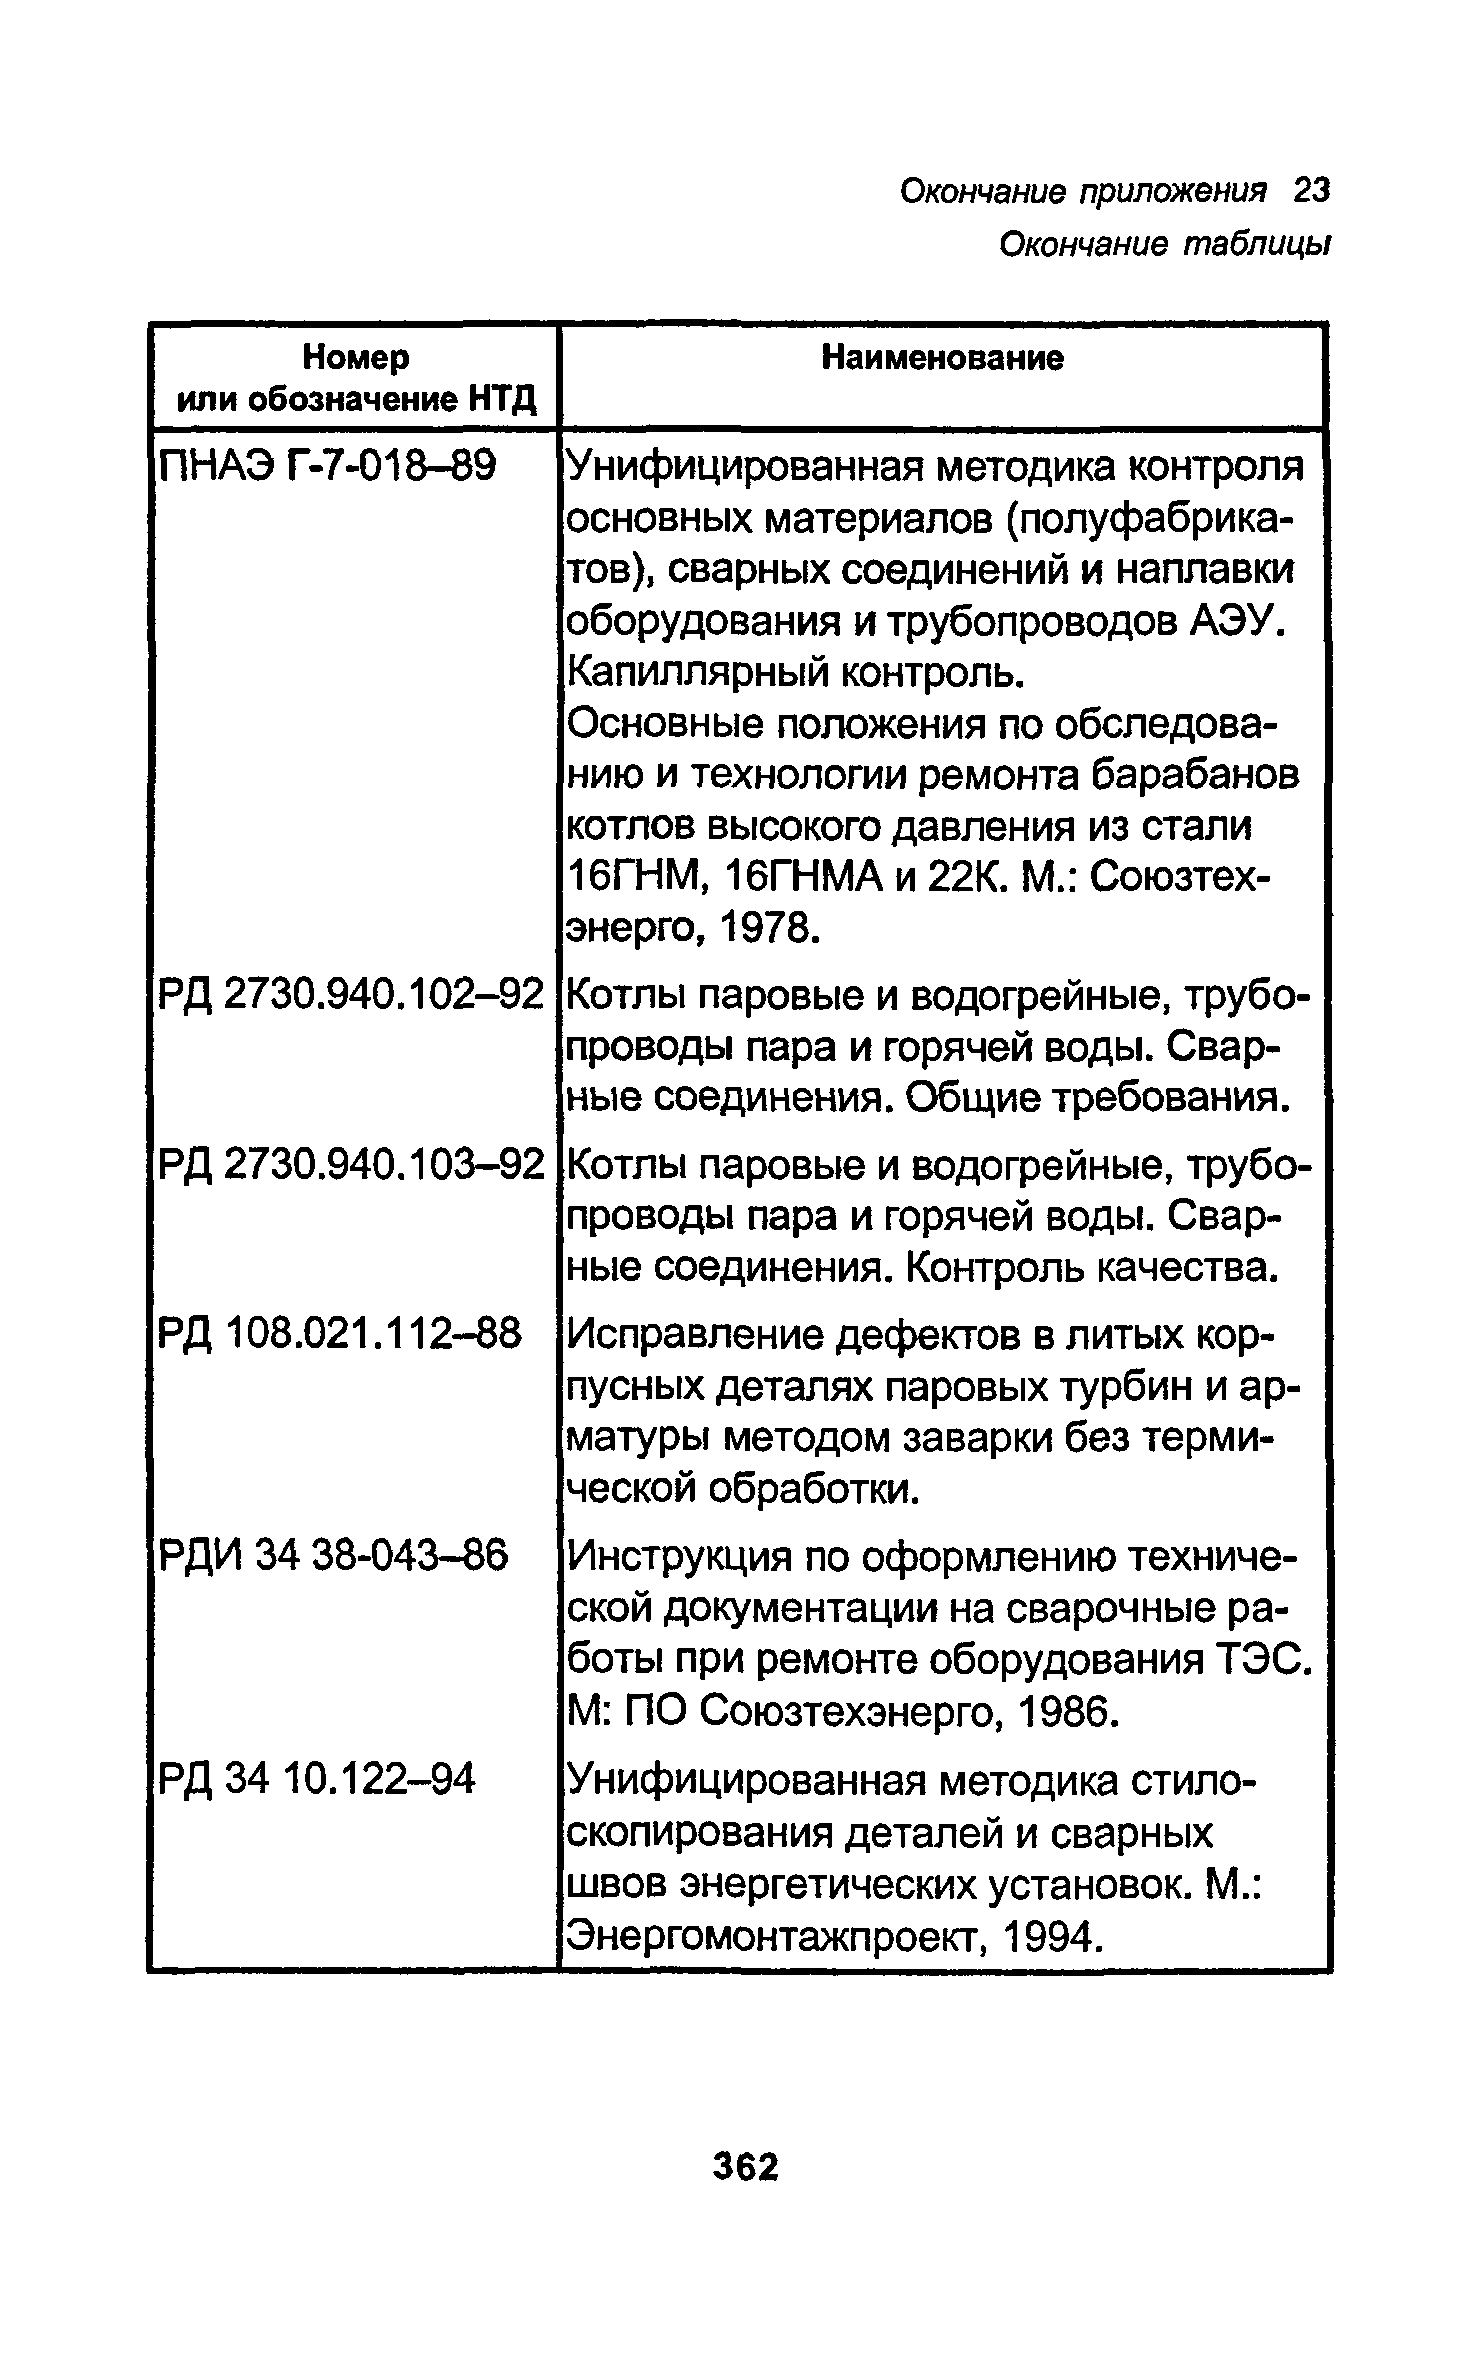 РД 34.15.027-93